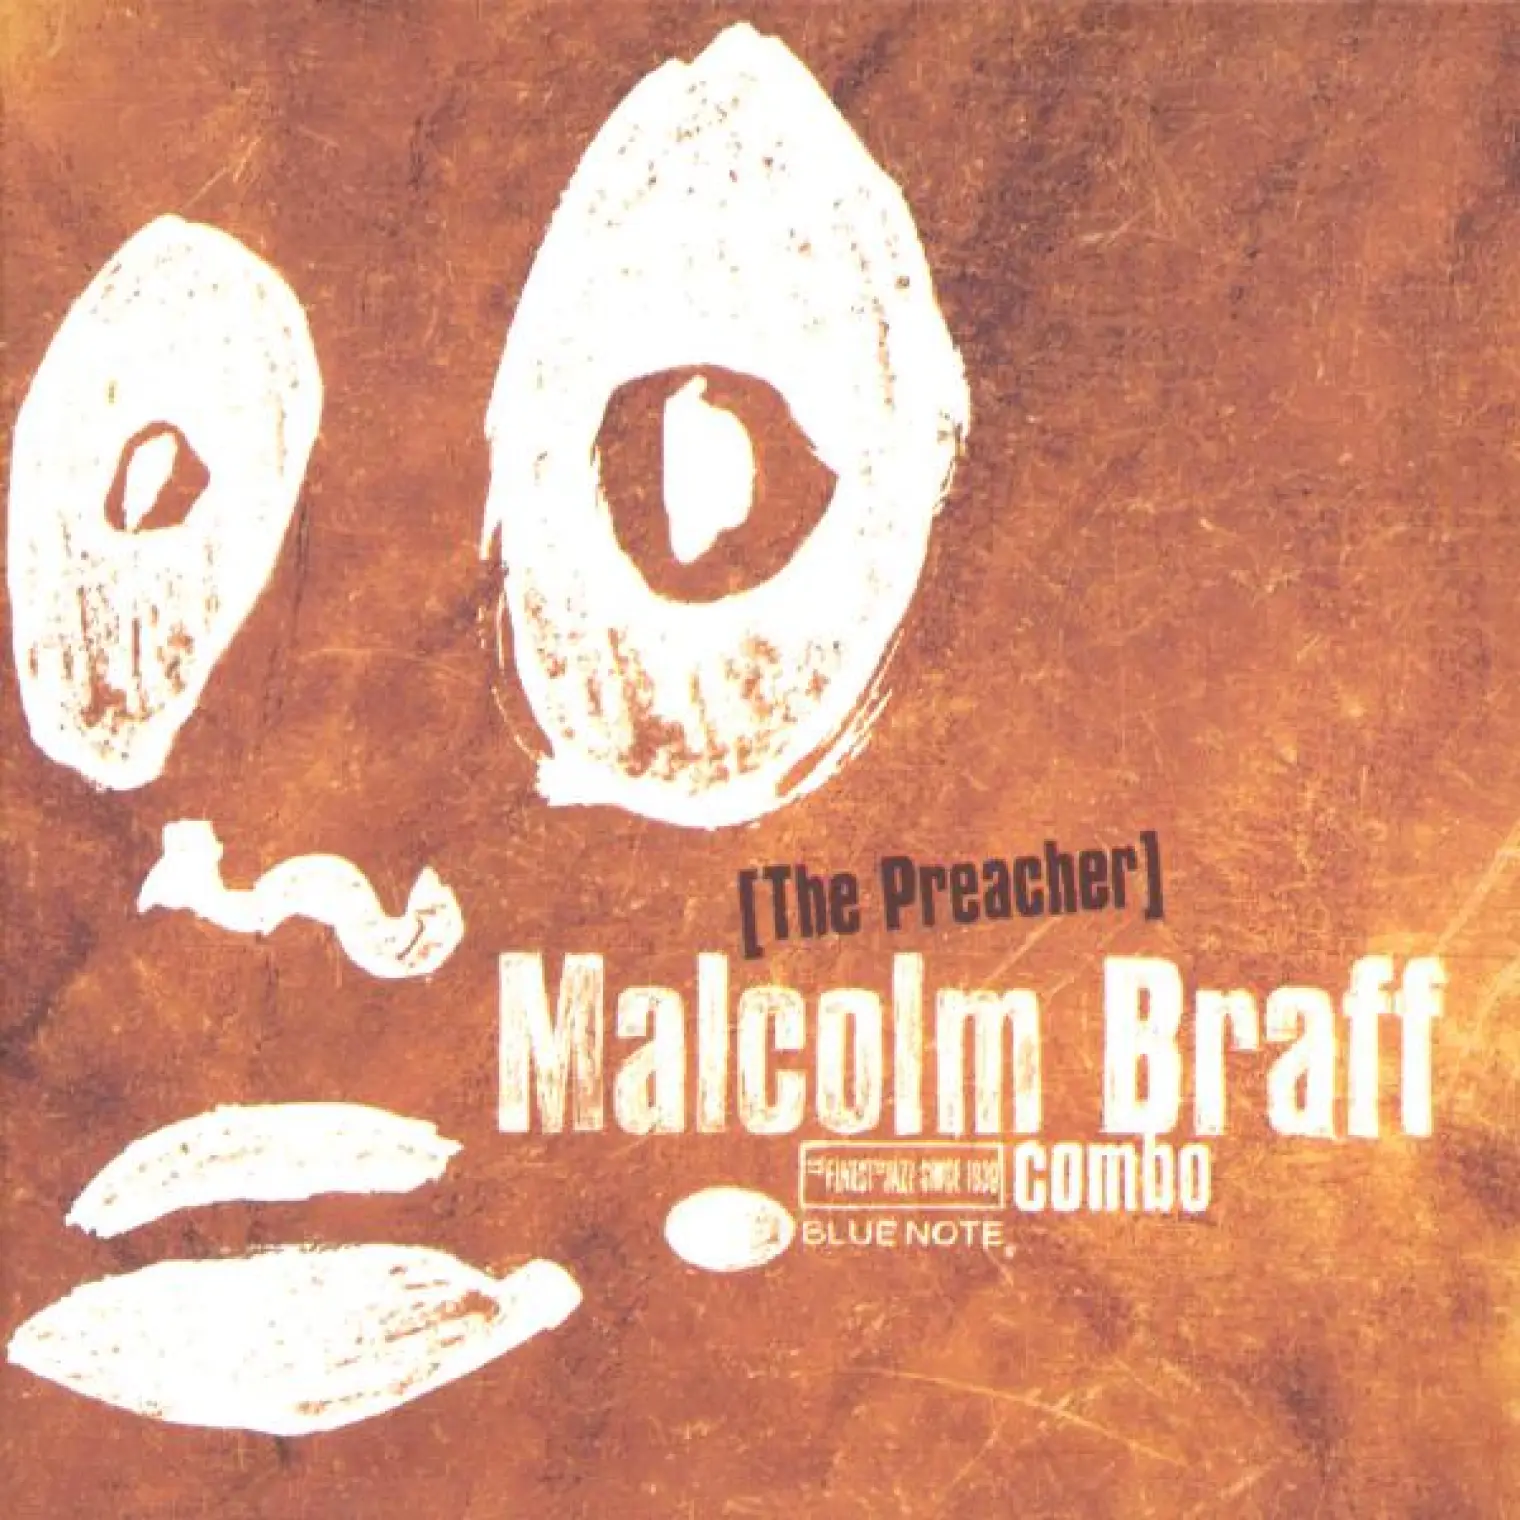 The Preacher -  Malcolm Braff 